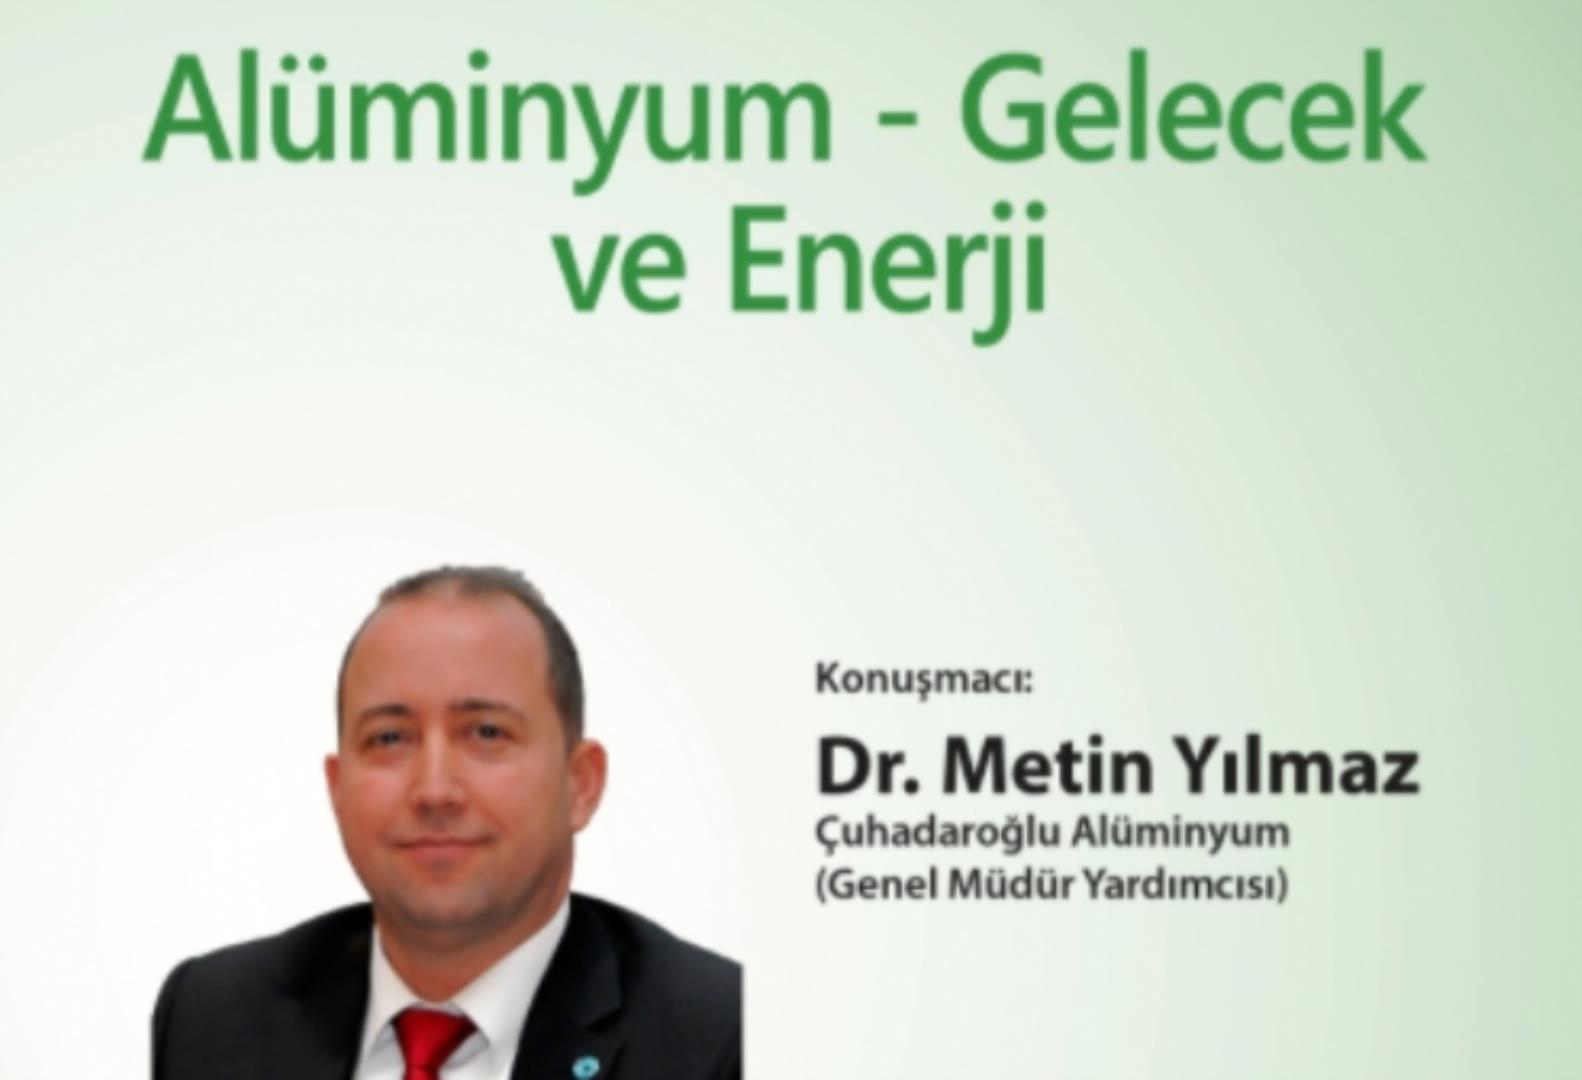 Alüminyum - Gelecek ve Enerji